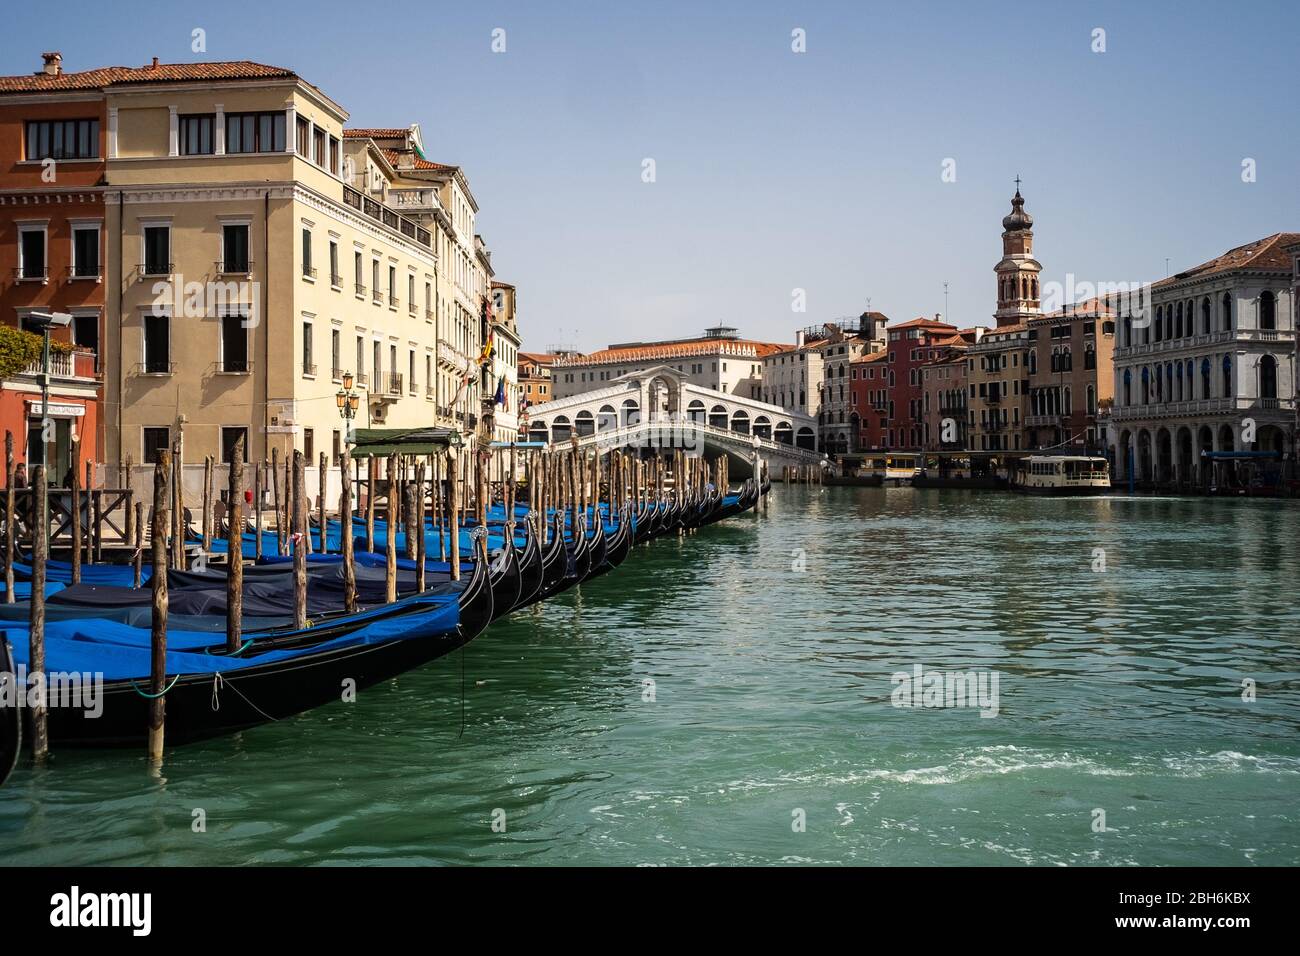 VENEZIA, ITALIA - 2020 APRILE: Le gondole sono ormeggiate accanto al ponte di rialto durante la chiusura nazionale per la pandemia Covid-19. Foto Stock